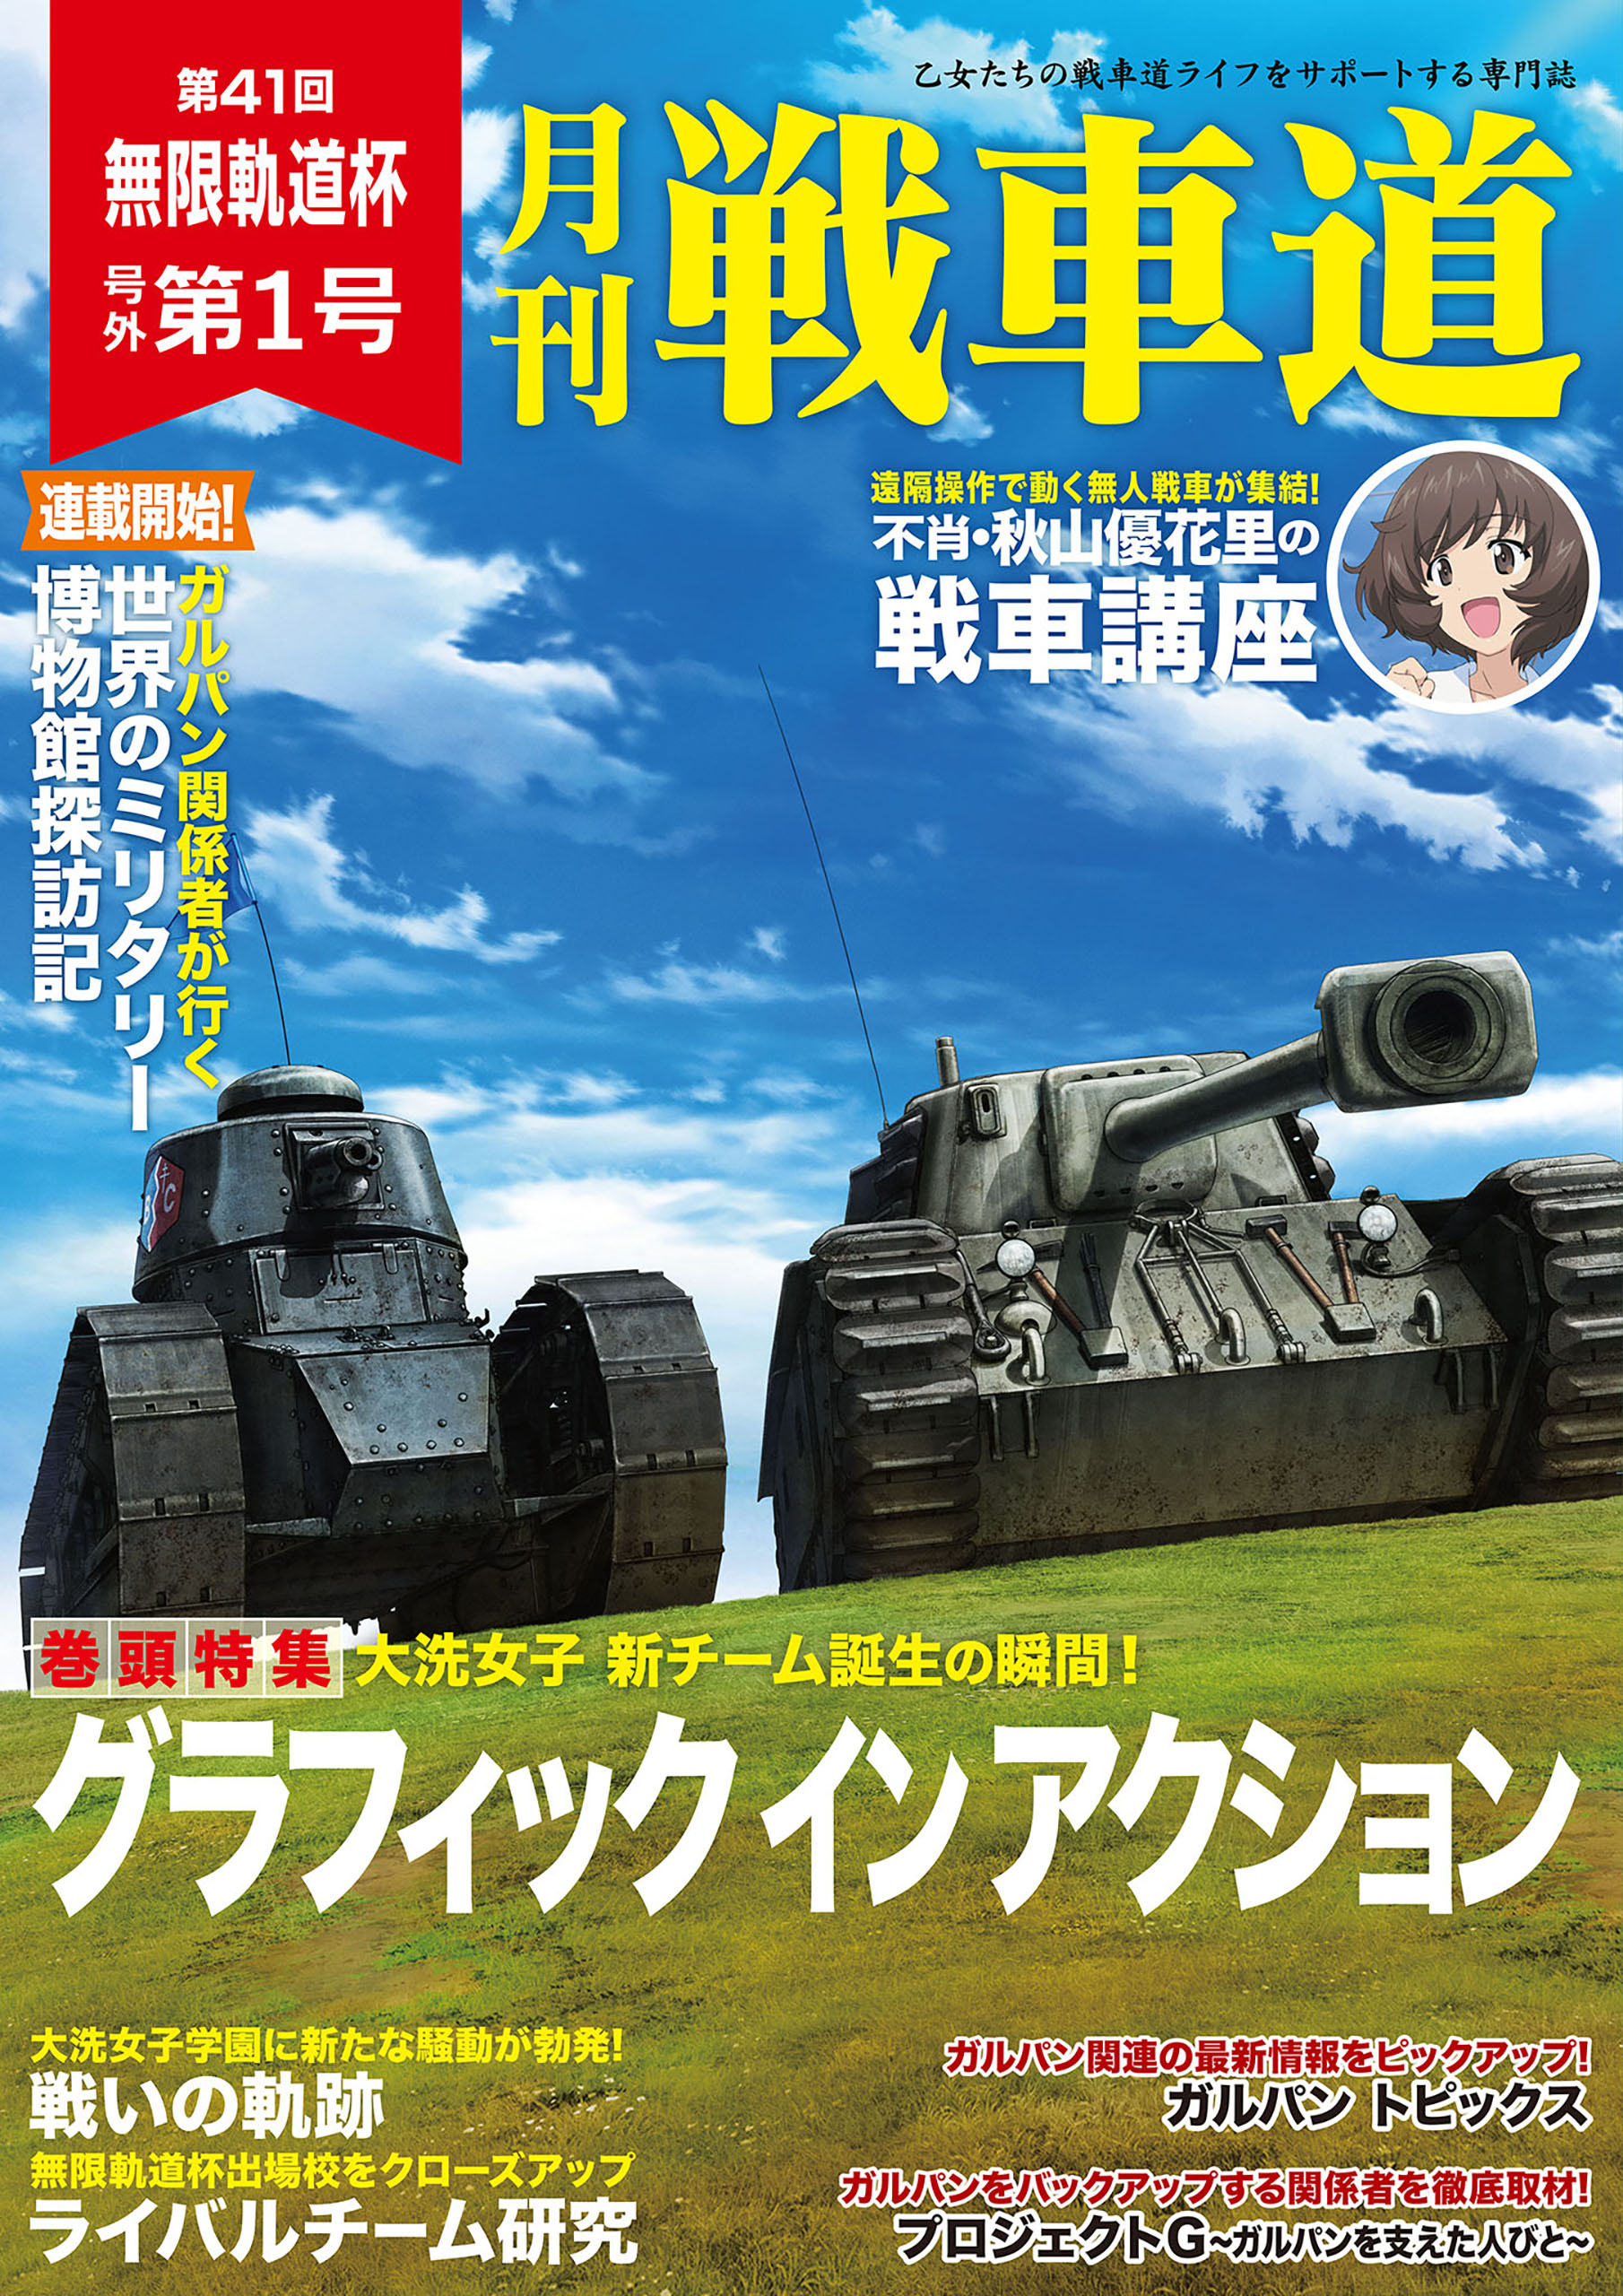 ガルパン・ファンブック 月刊戦車道 号外 第1号 - バンダイナムコ 